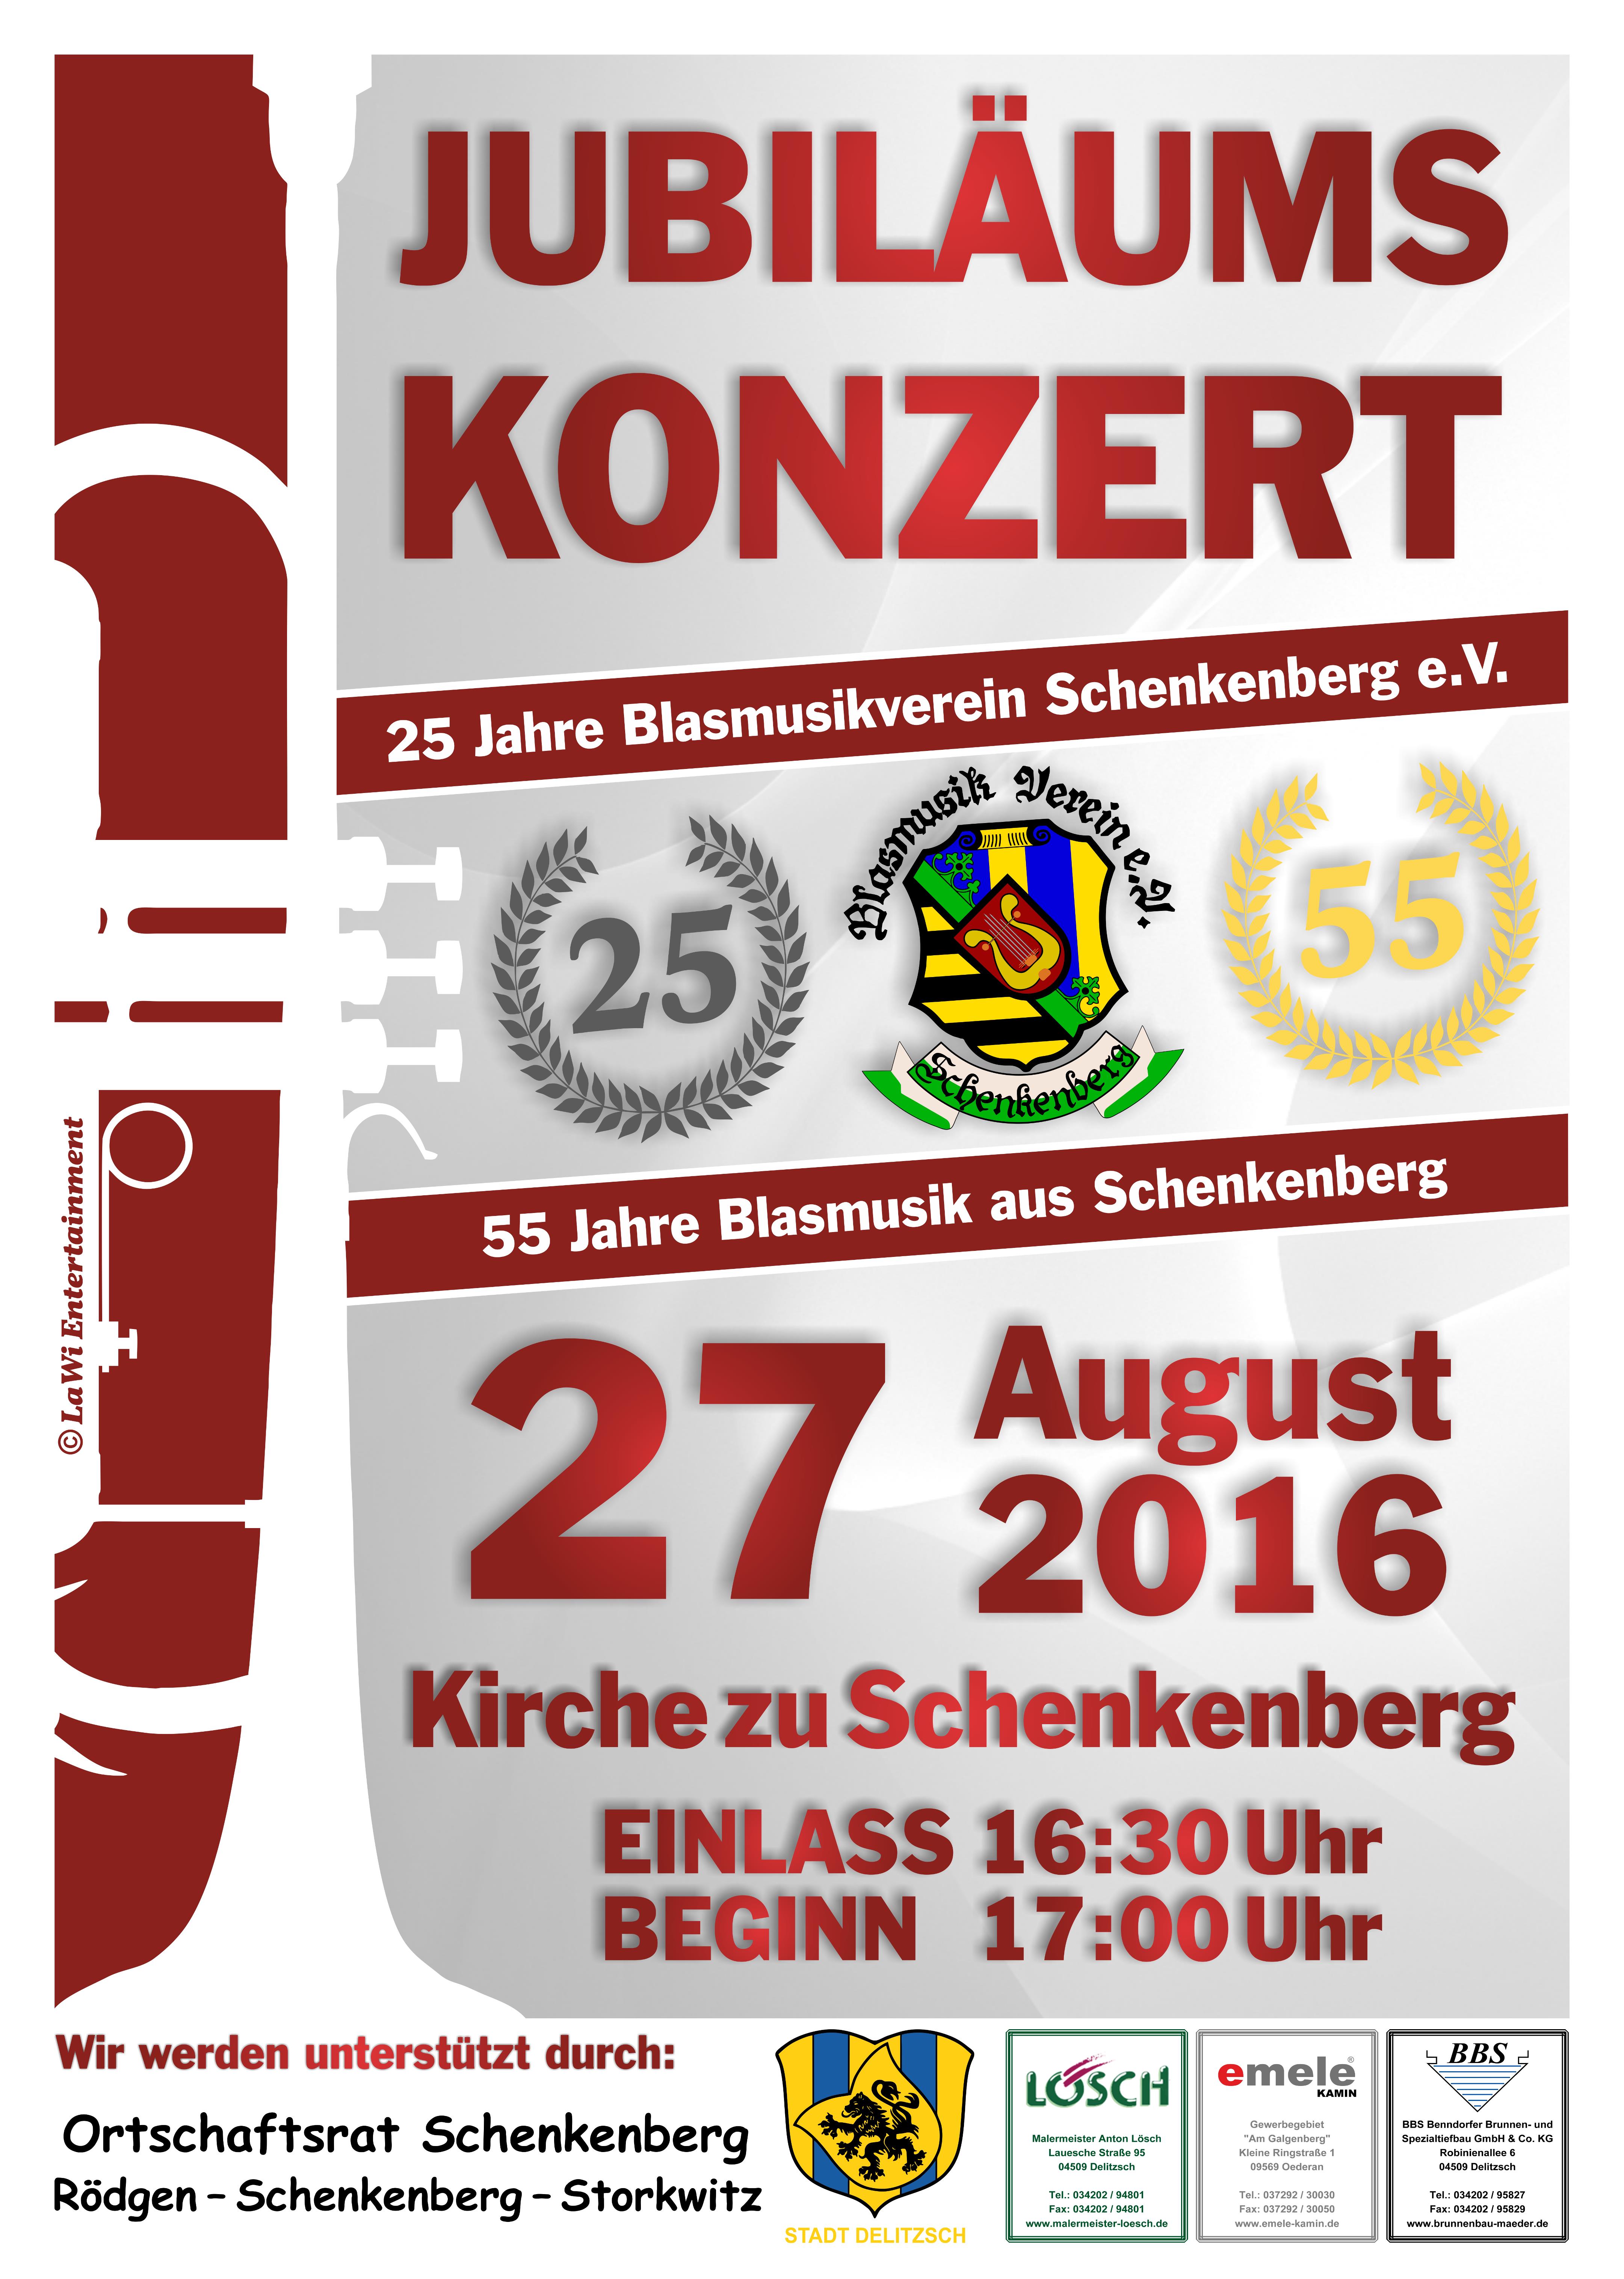 Jubiläumskonzert 25 Jahre/55 Jahre Blasmusikverein Schenkenberg e.V. 2016 - Blasmusikverein Schenkenberg e.V.